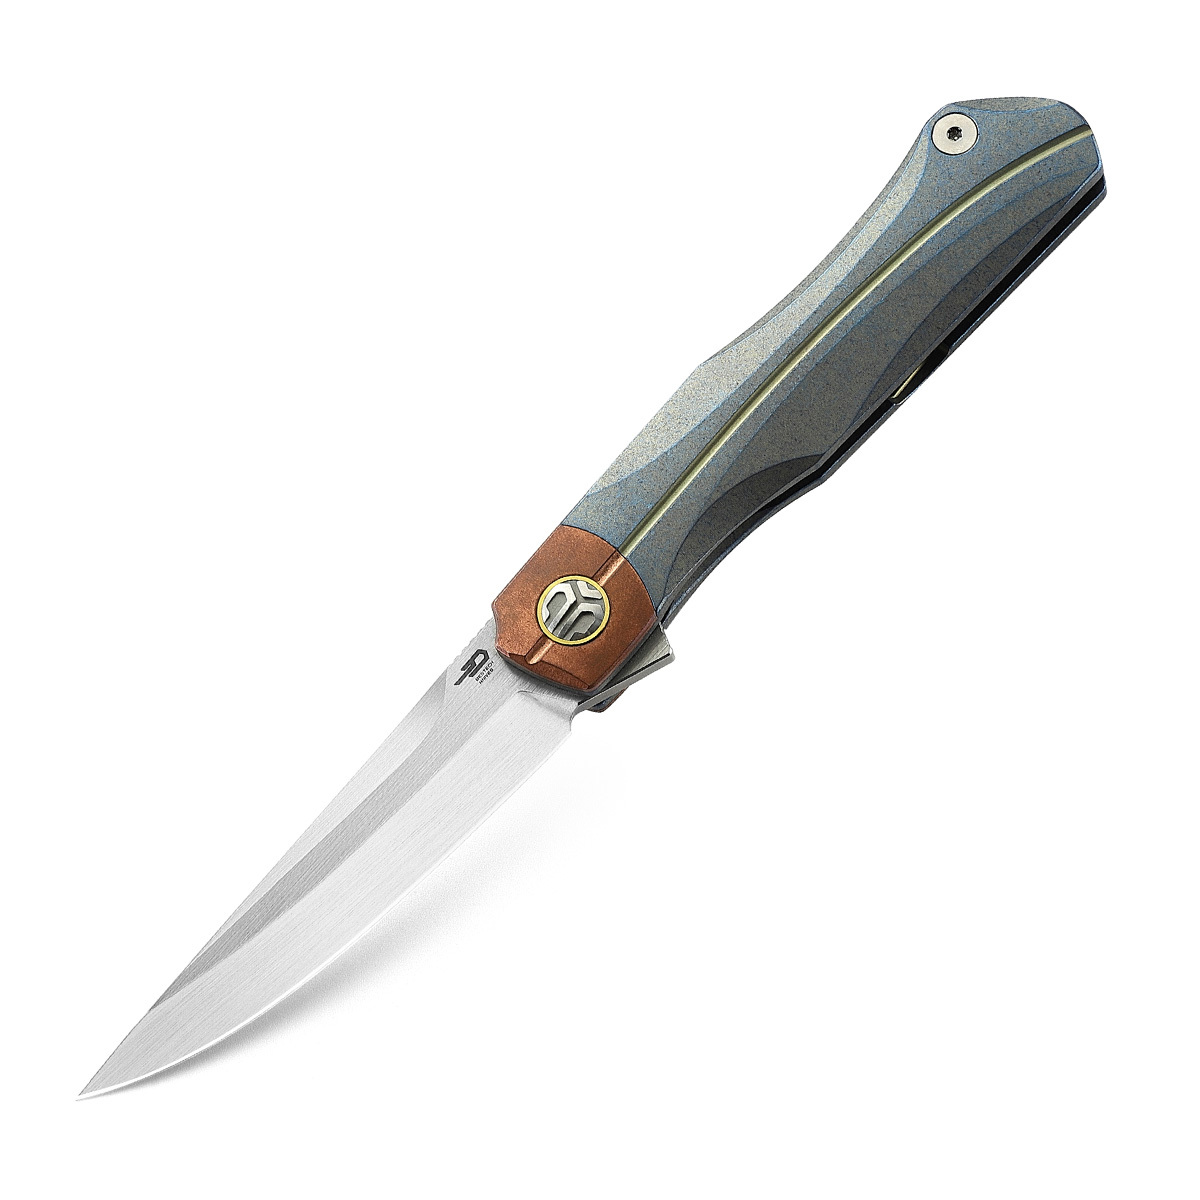 Складной нож Bestech Thyra, сталь M390, рукоять титан/медь, серый складной нож bestech swift сталь d2 micarta